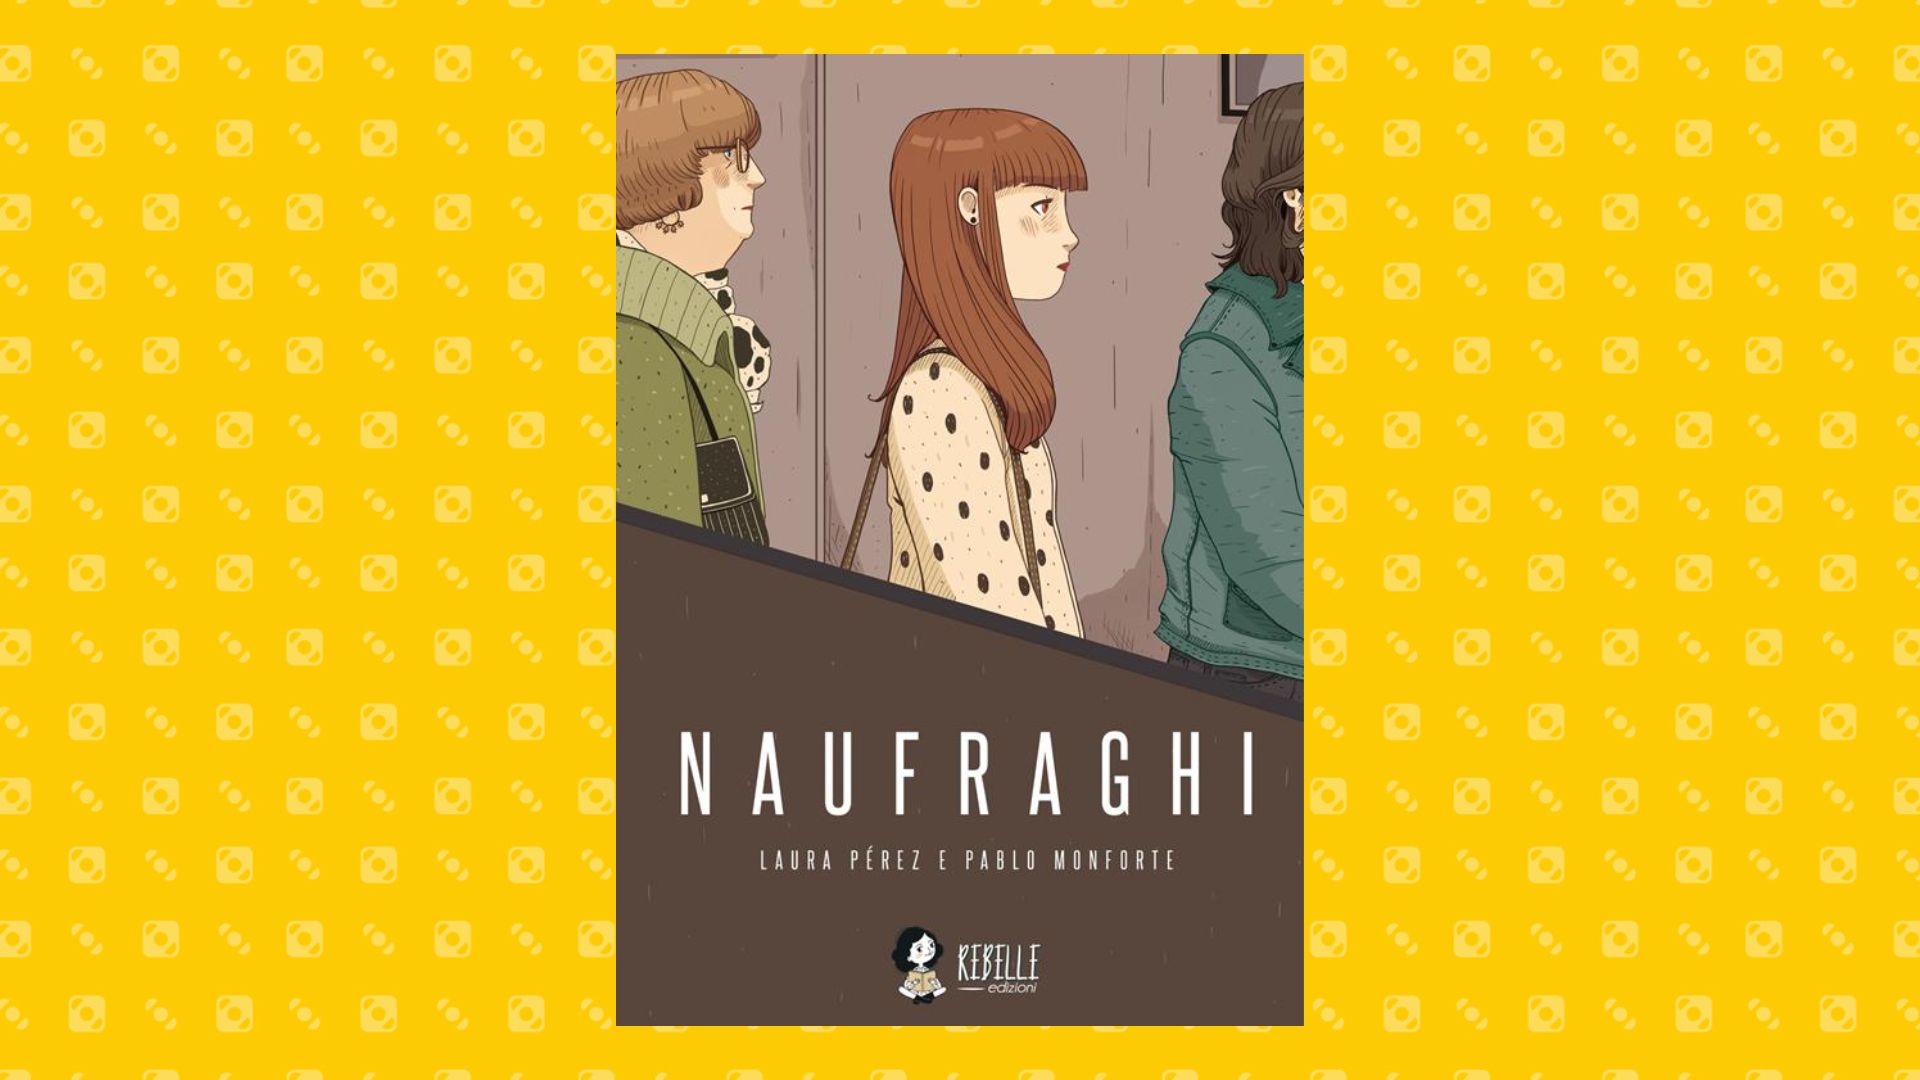 Naufraghi, Il romanzo grafico del duo Laura Pérez e Pablo Monforte